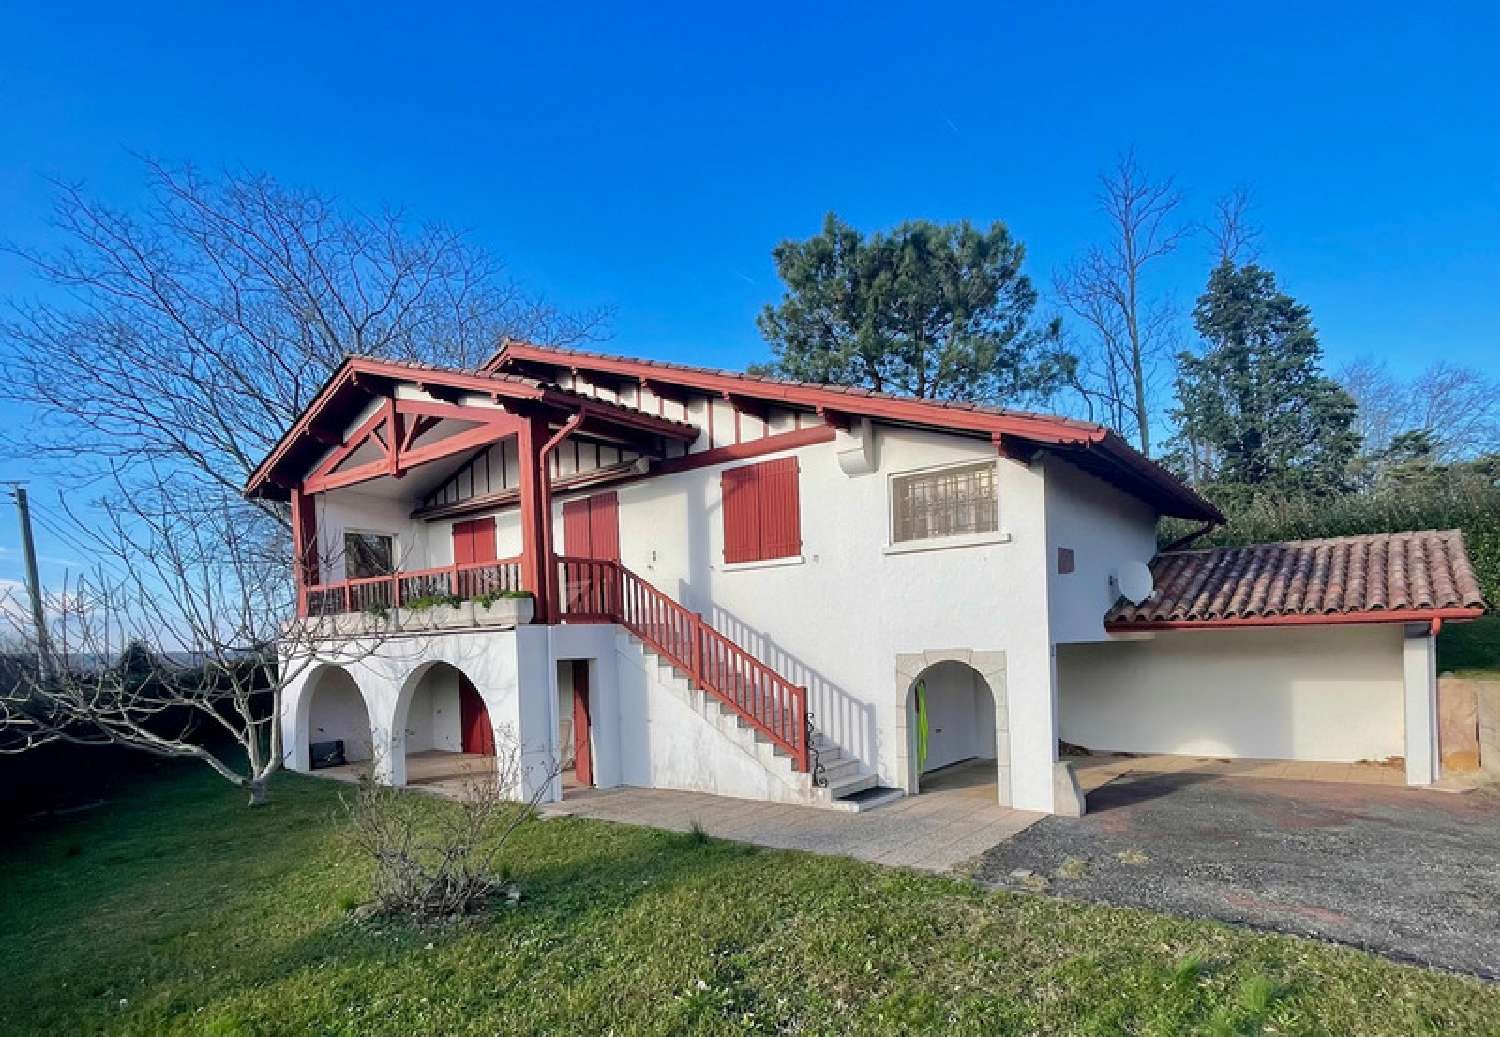  à vendre maison Urrugne Pyrénées-Atlantiques 2